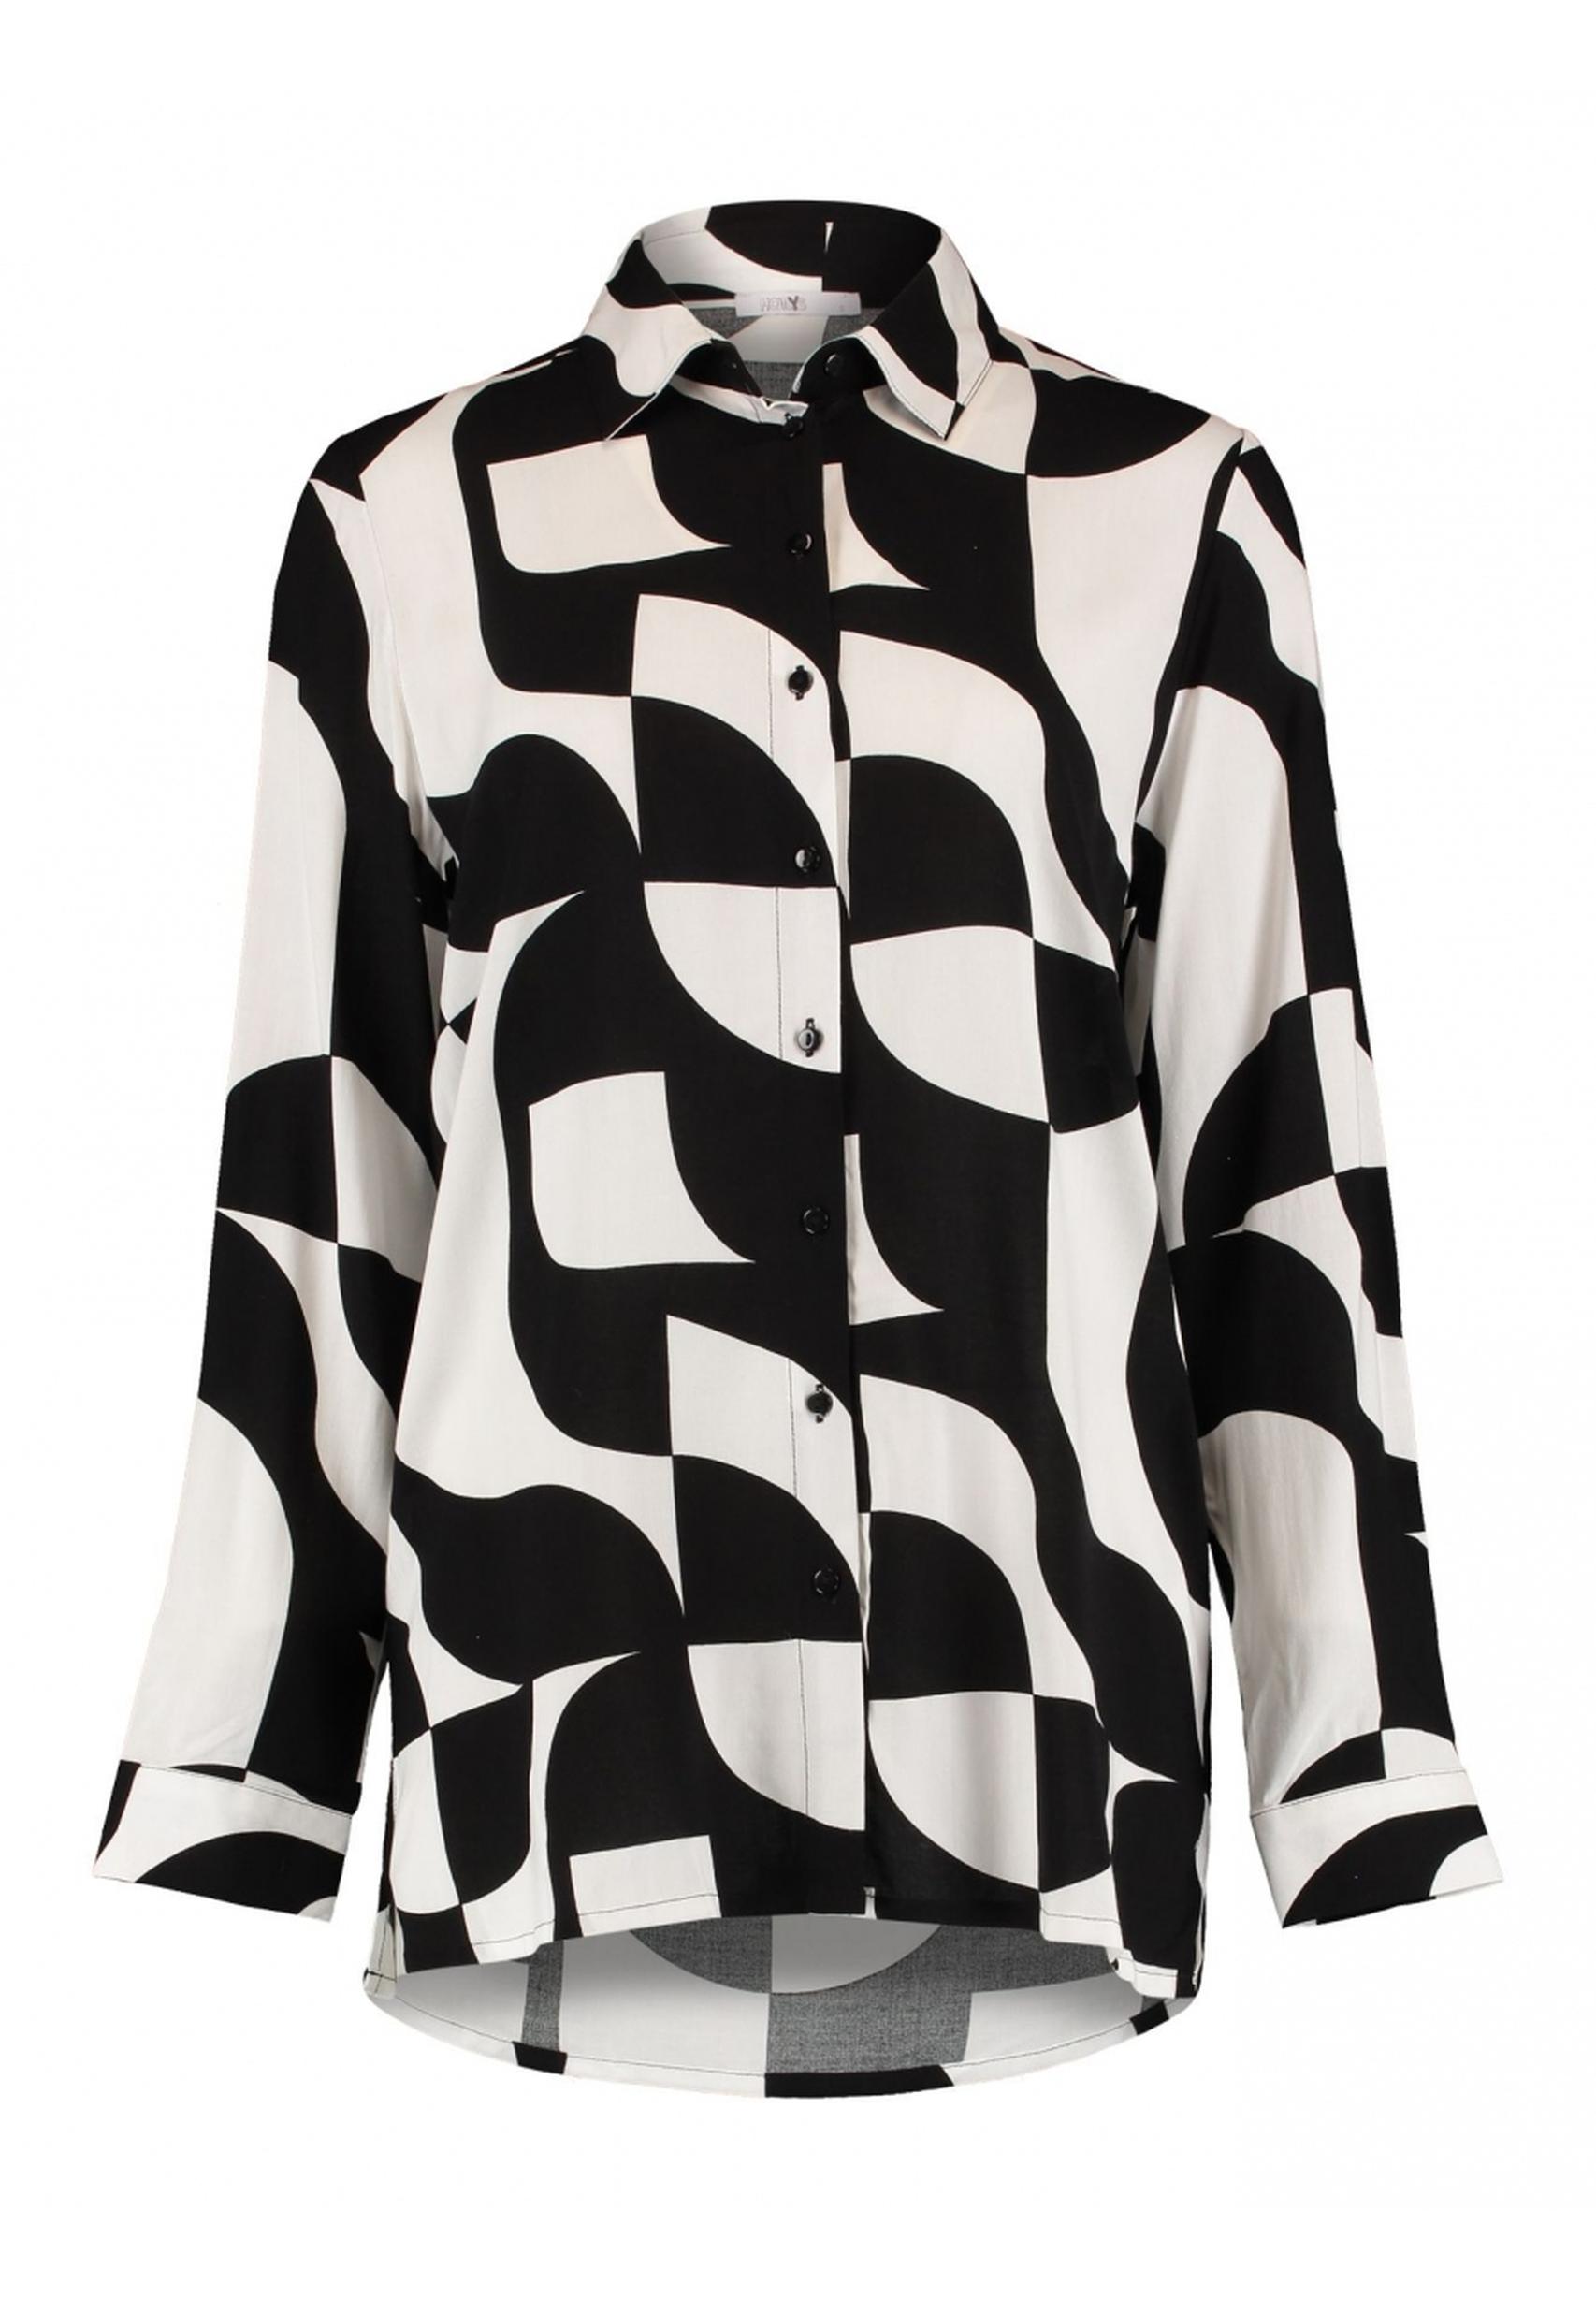 HAILYS Bluse in Ni44na der schwarz-weiß BOX-2302029 - aus von Kollektion Trendige